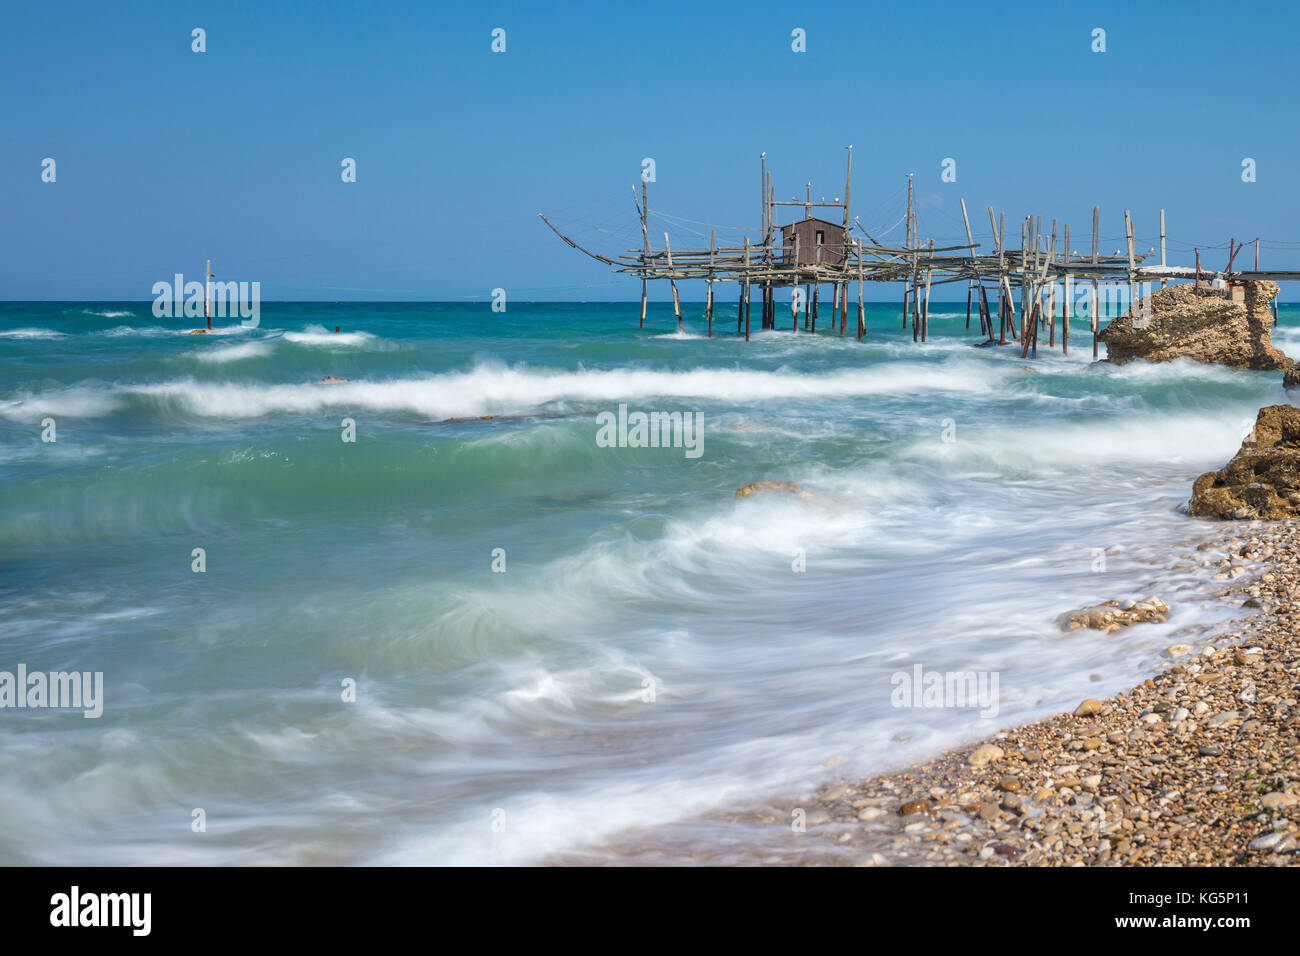 Vista della costa dei trabocchi, trabocco è una vecchia macchina da pesca tipica della costa abruzzese di distretto, mare adriatico, Italia Foto Stock